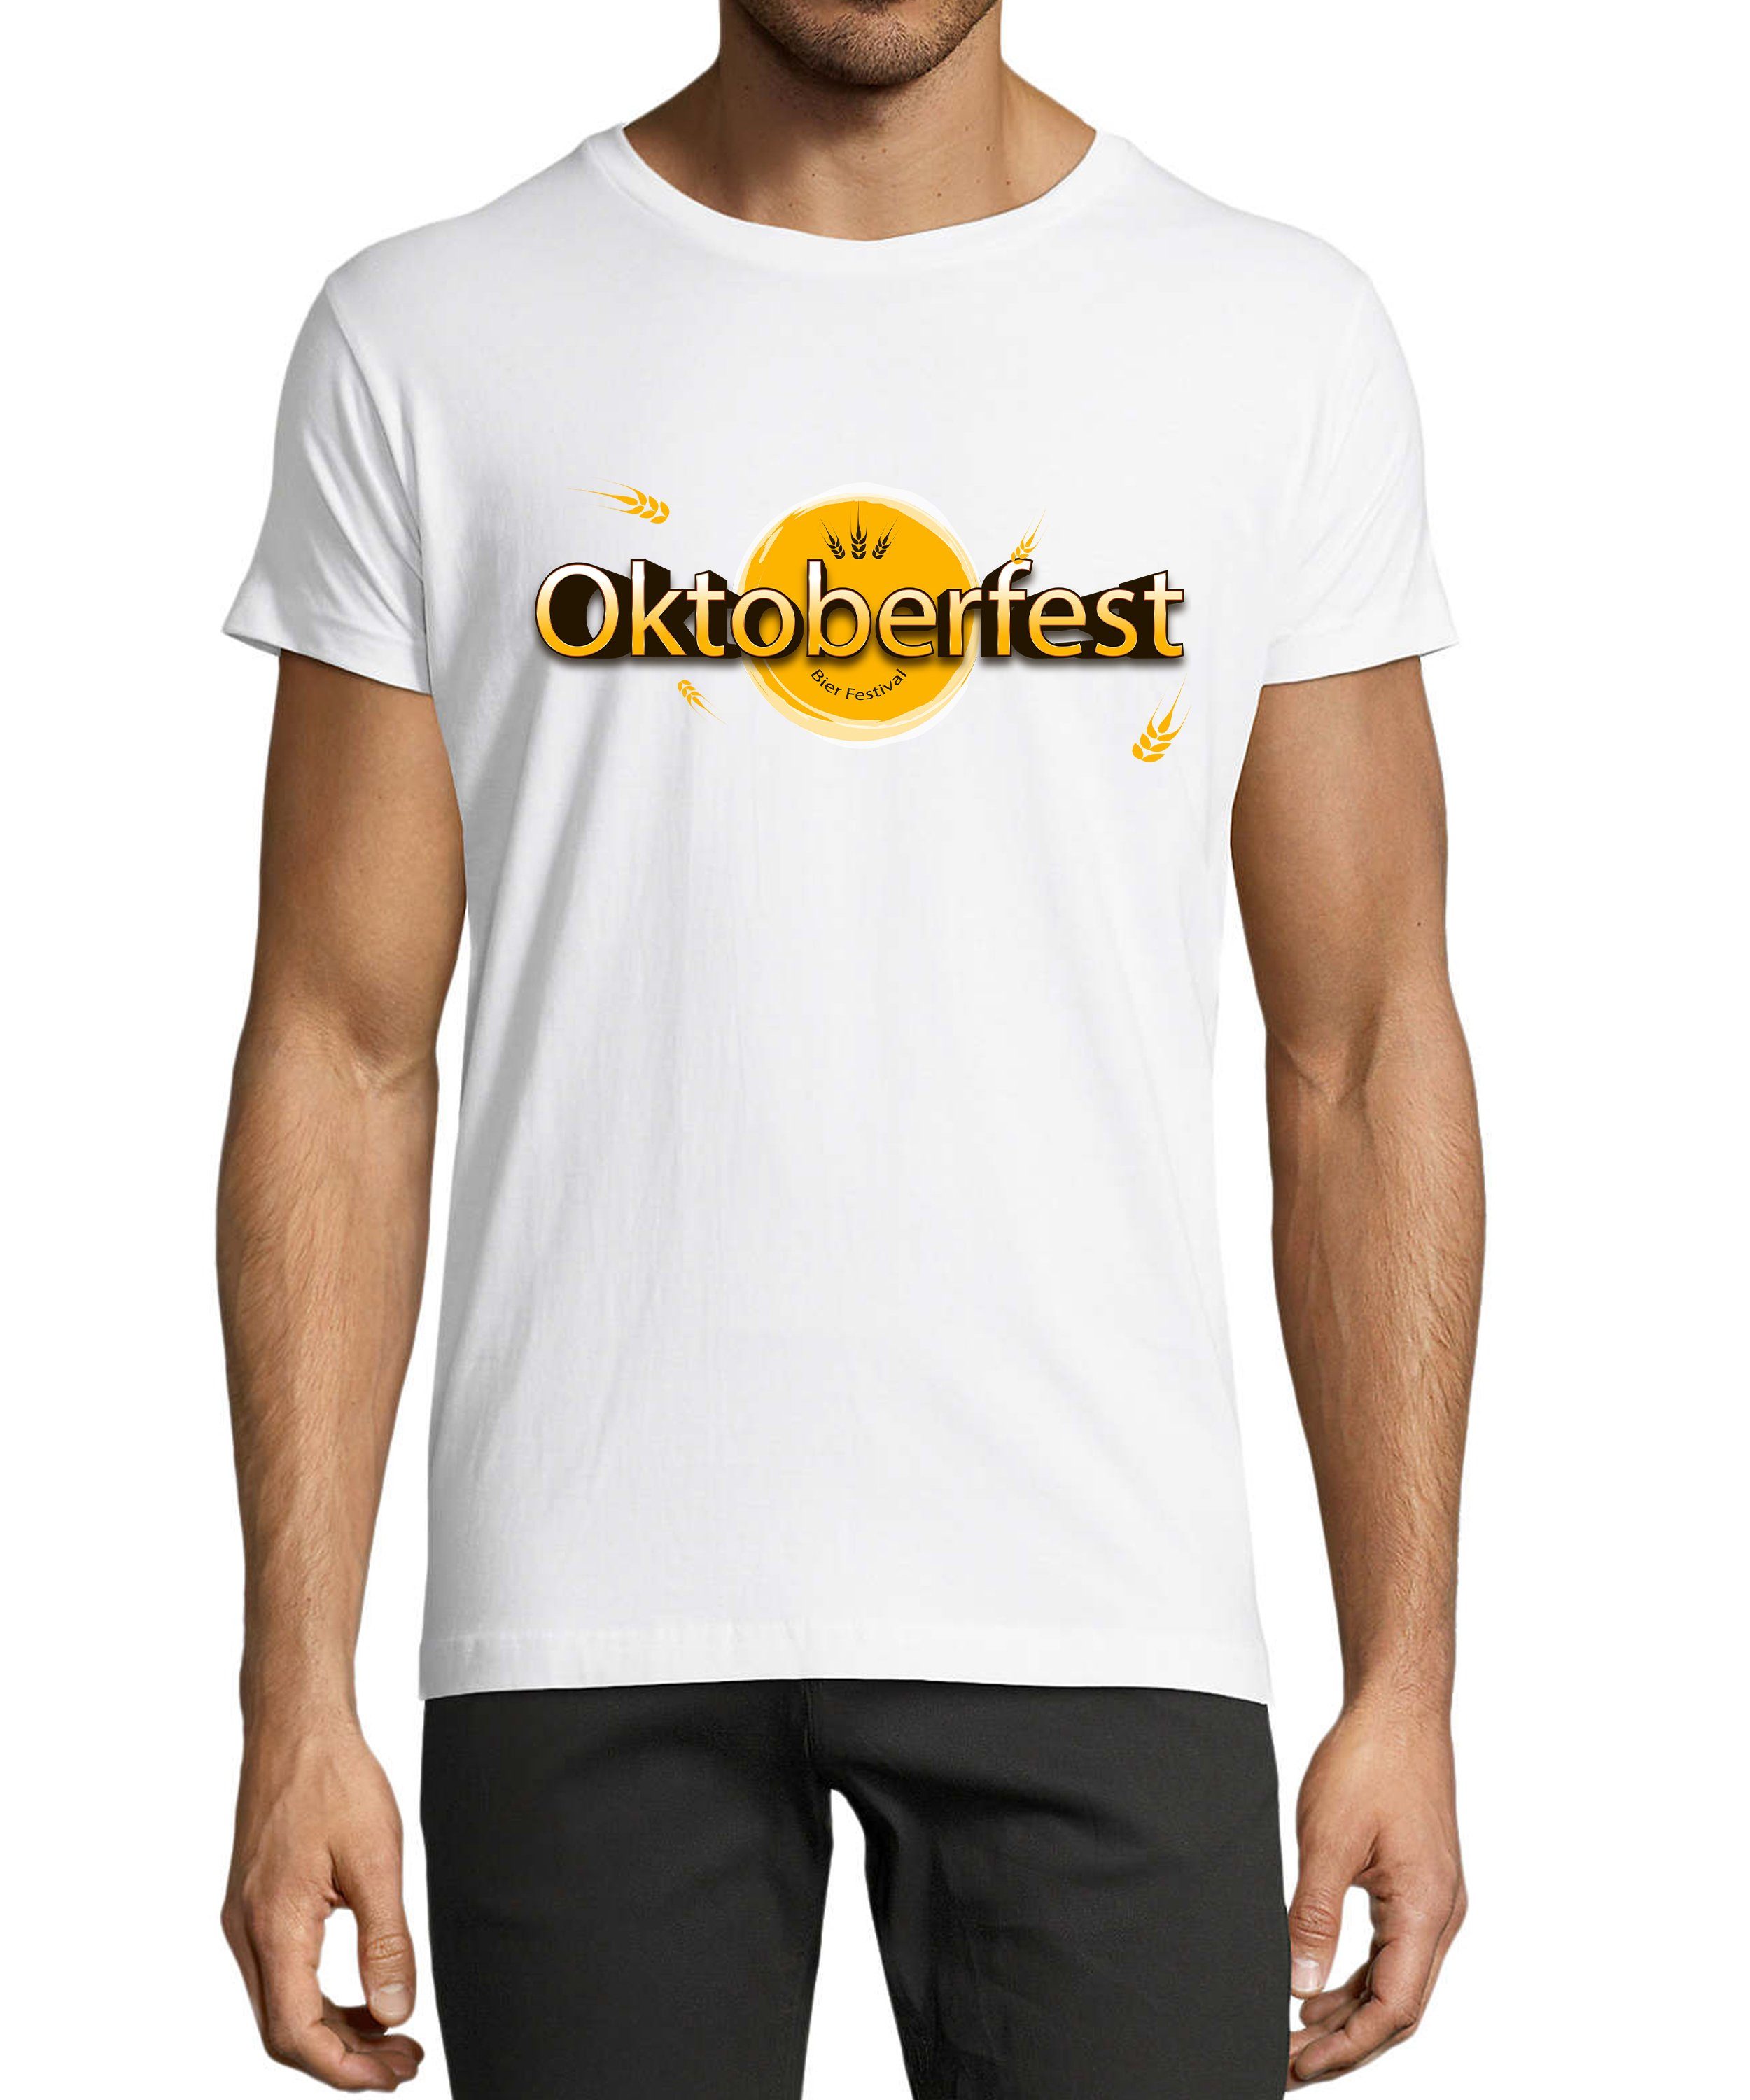 - MyDesign24 Fit, Regular Herren Party T-Shirt mit Bier Baumwollshirt T-Shirt Shirt Festival Oktoberfest i325 Aufdruck Trinkshirt weiss